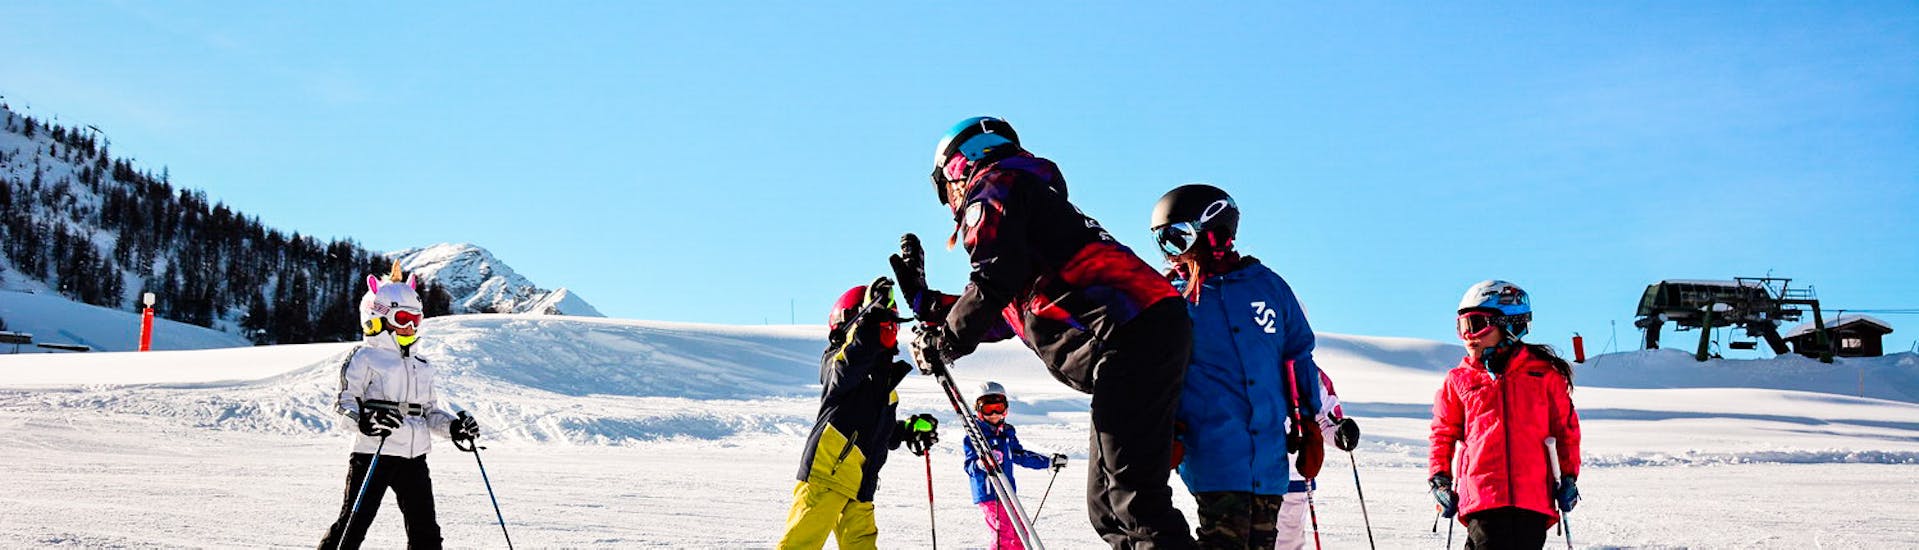 Lezioni di sci per bambini (6-11 anni) per sciatori con esperienza.